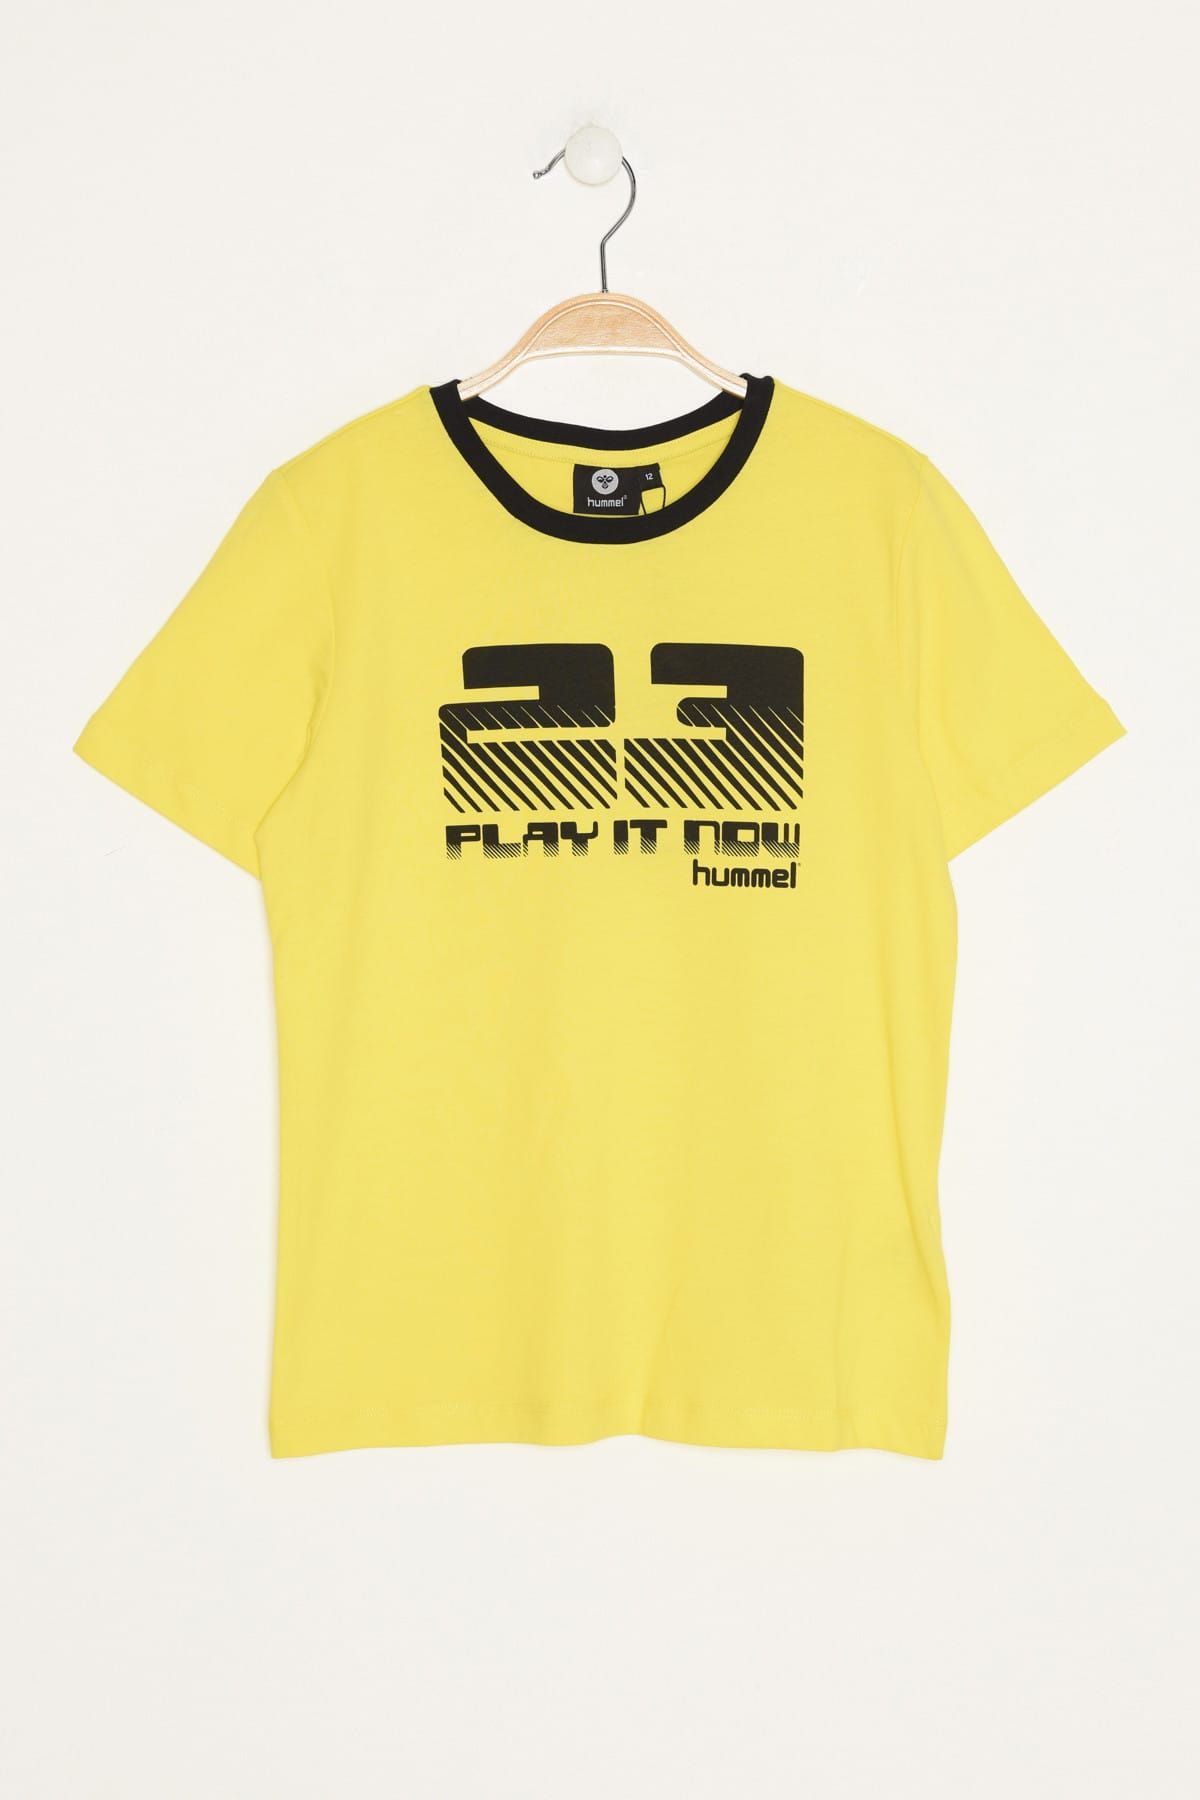 hummel Sarı Unisex Çocuk T-Shirt